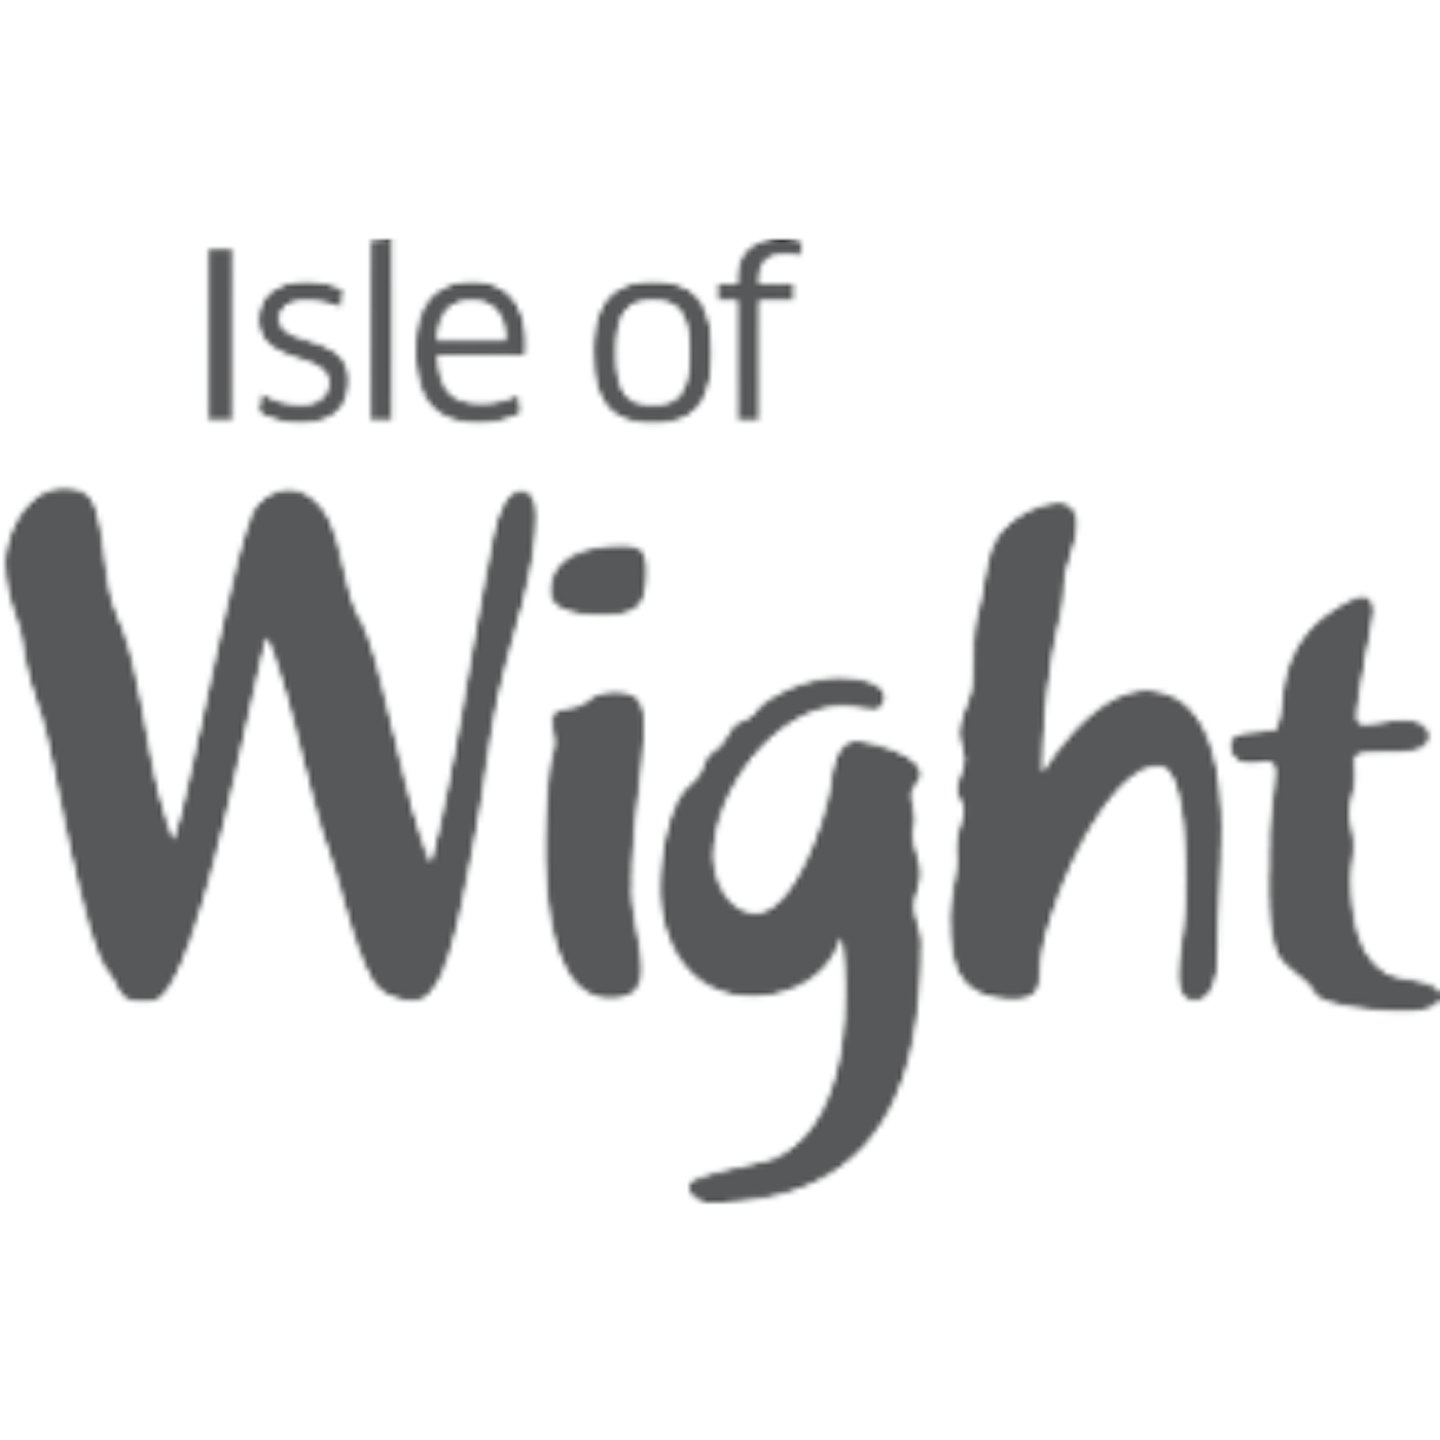 Visit Isle of Wight logo